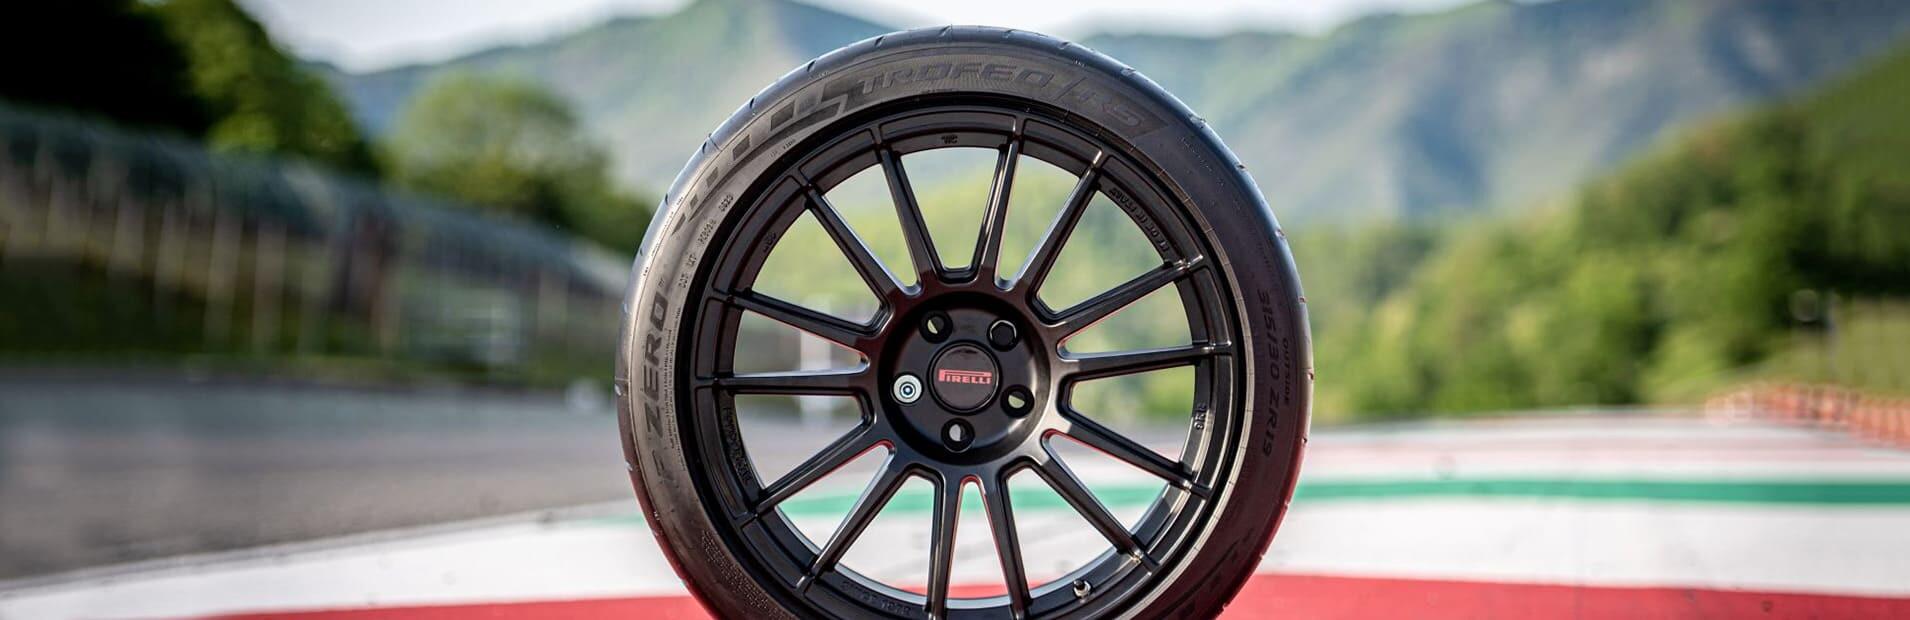 Pirelli P Zero Trofeo RS, the new semi slick born on the track